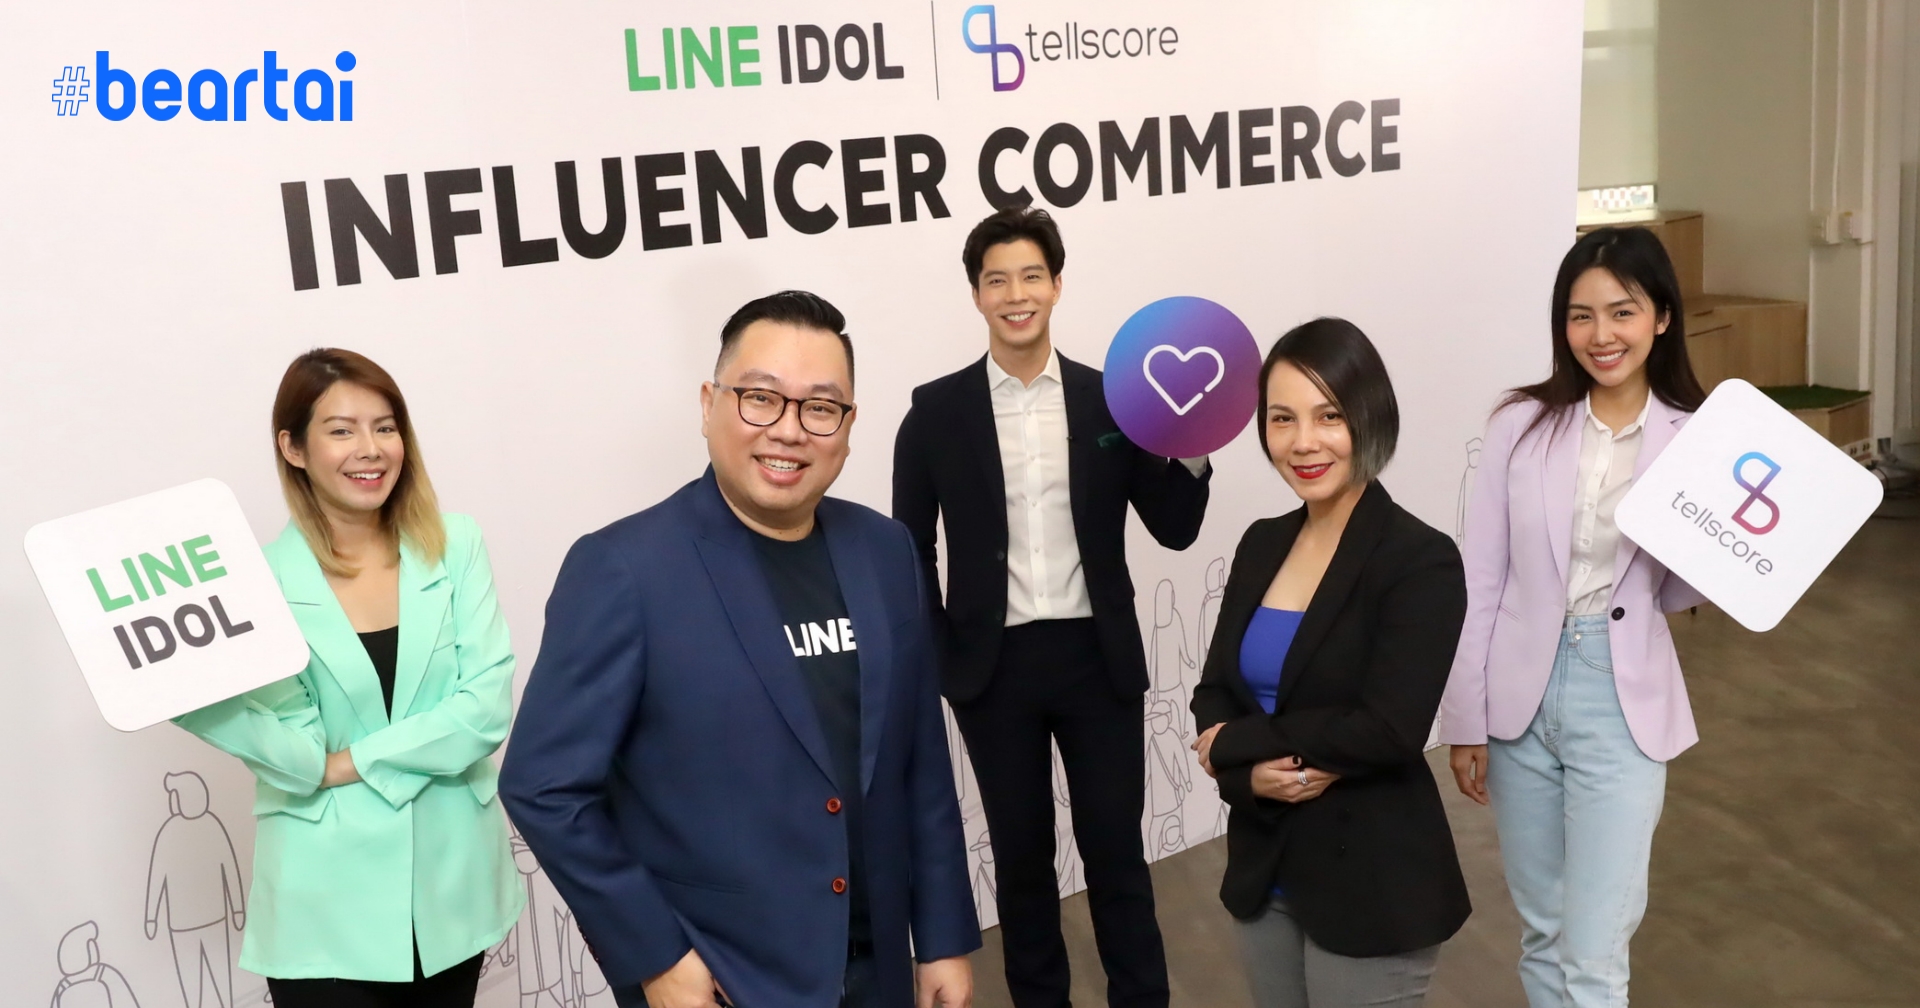 LINE IDOL เปิดตัว Influencer Commerce ติดปีกไมโครอินฟลูเอนเซอร์สู่ระดับมืออาชีพ